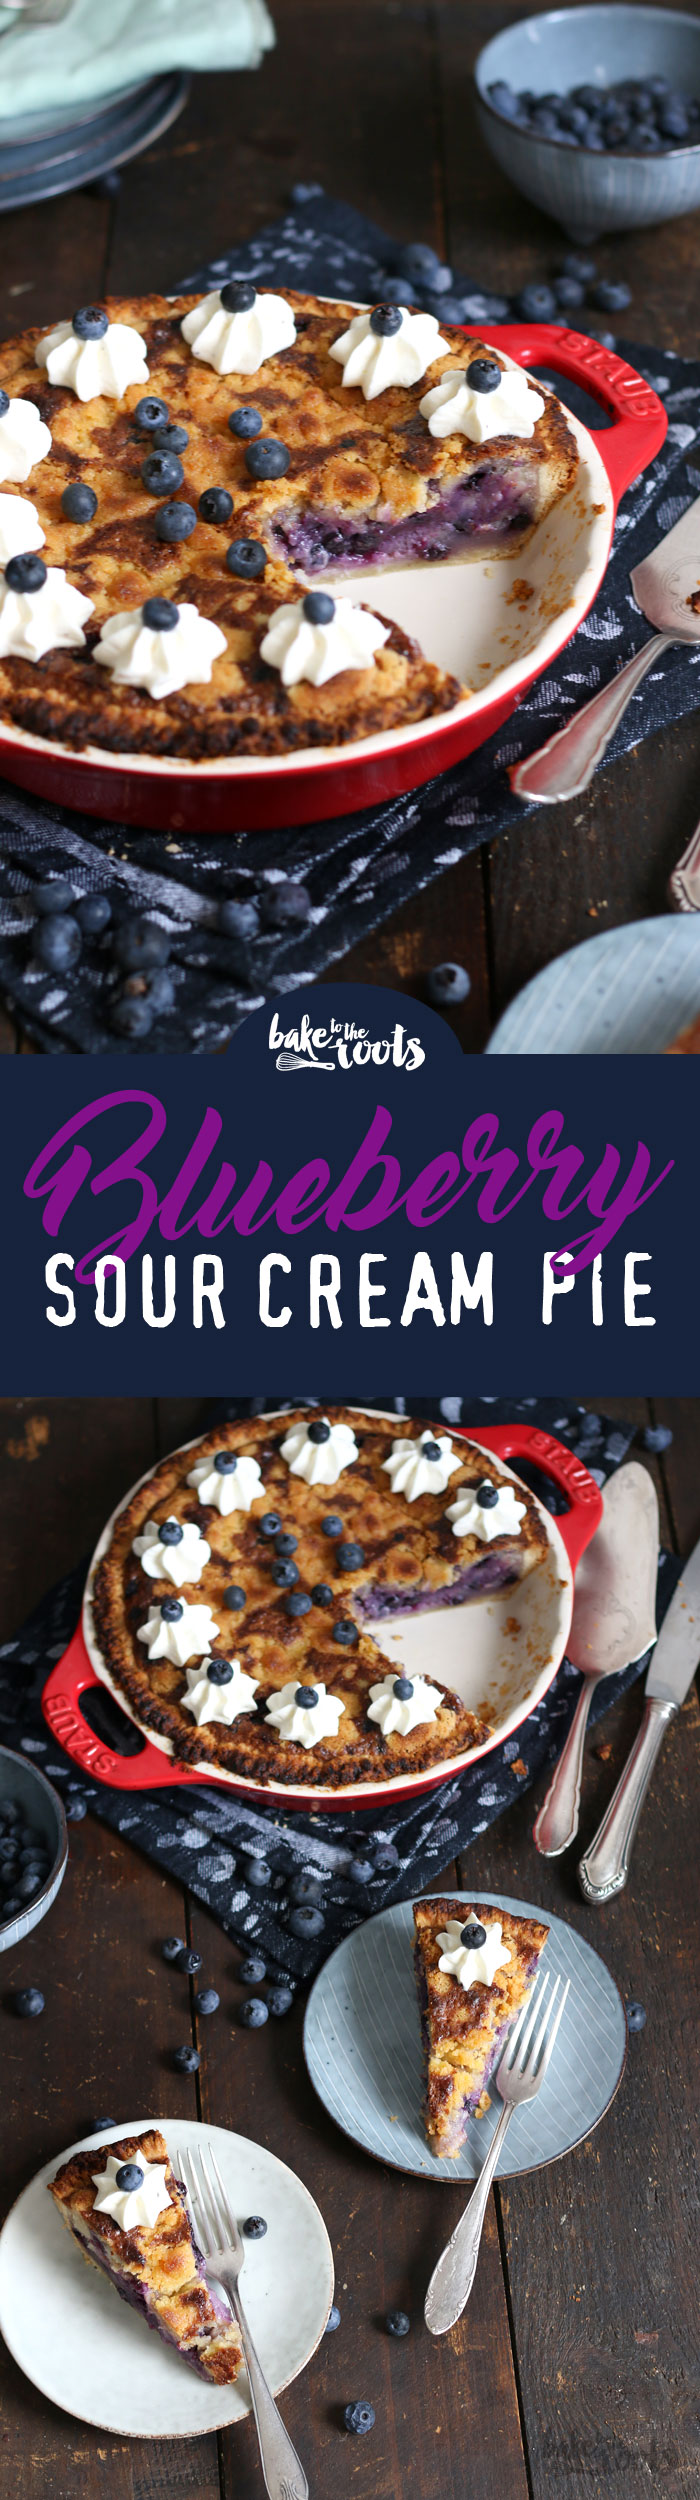 Leckerer Blaubeeren Pie mit Sour Cream (Schmand) | Bake to the roots